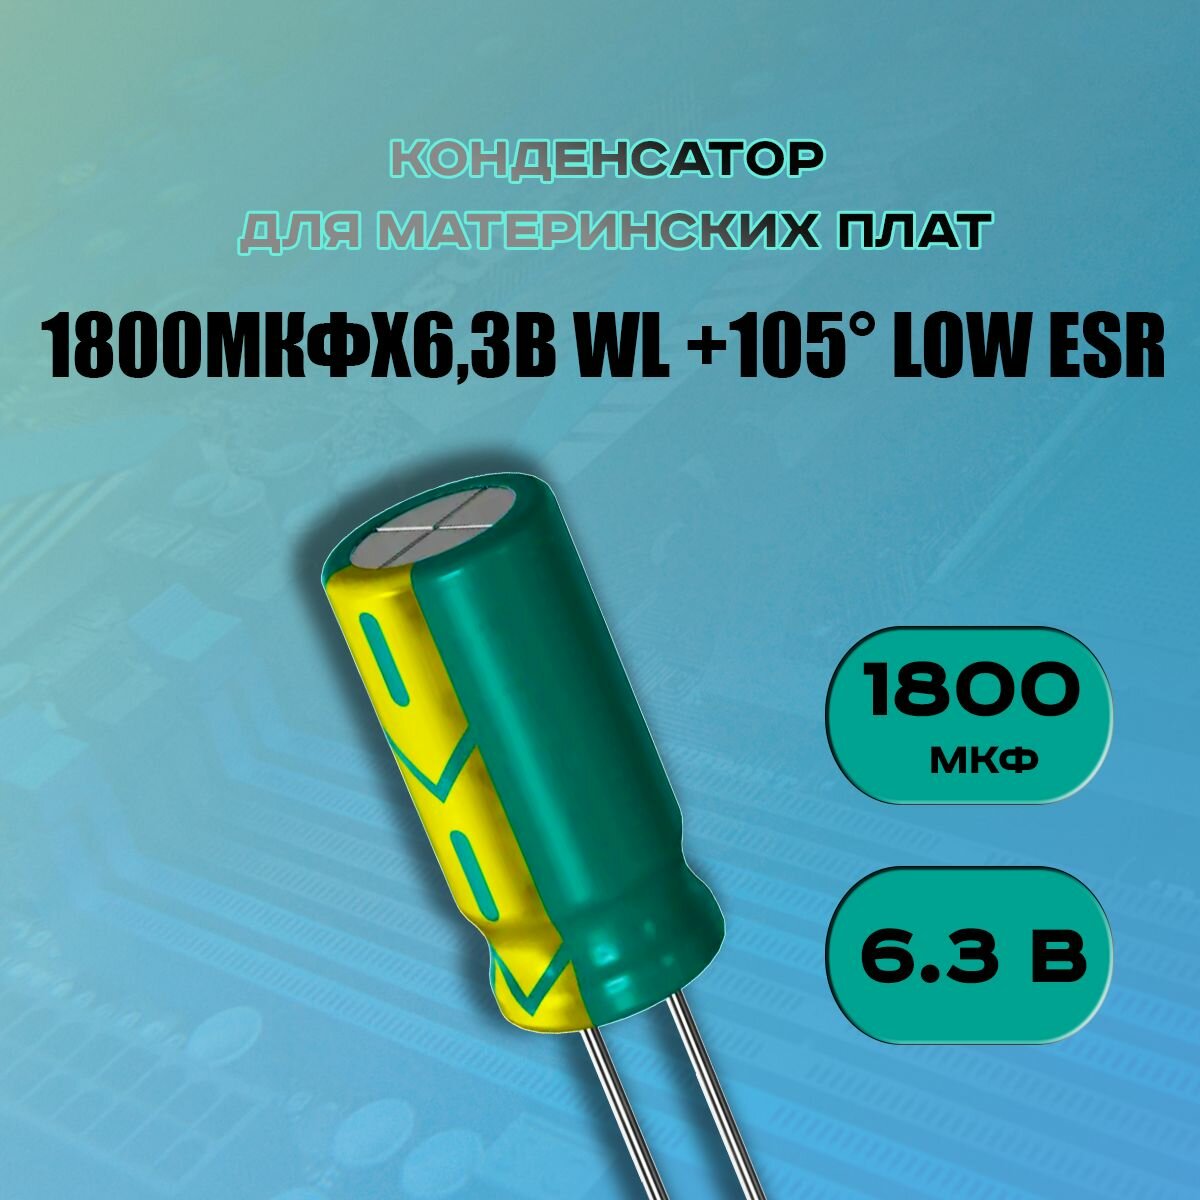 Конденсатор для материнской платы 1800 микрофарат 6.3 Вольт (1500uf 6.3V WL +105 LOW ESR) - 1 шт.